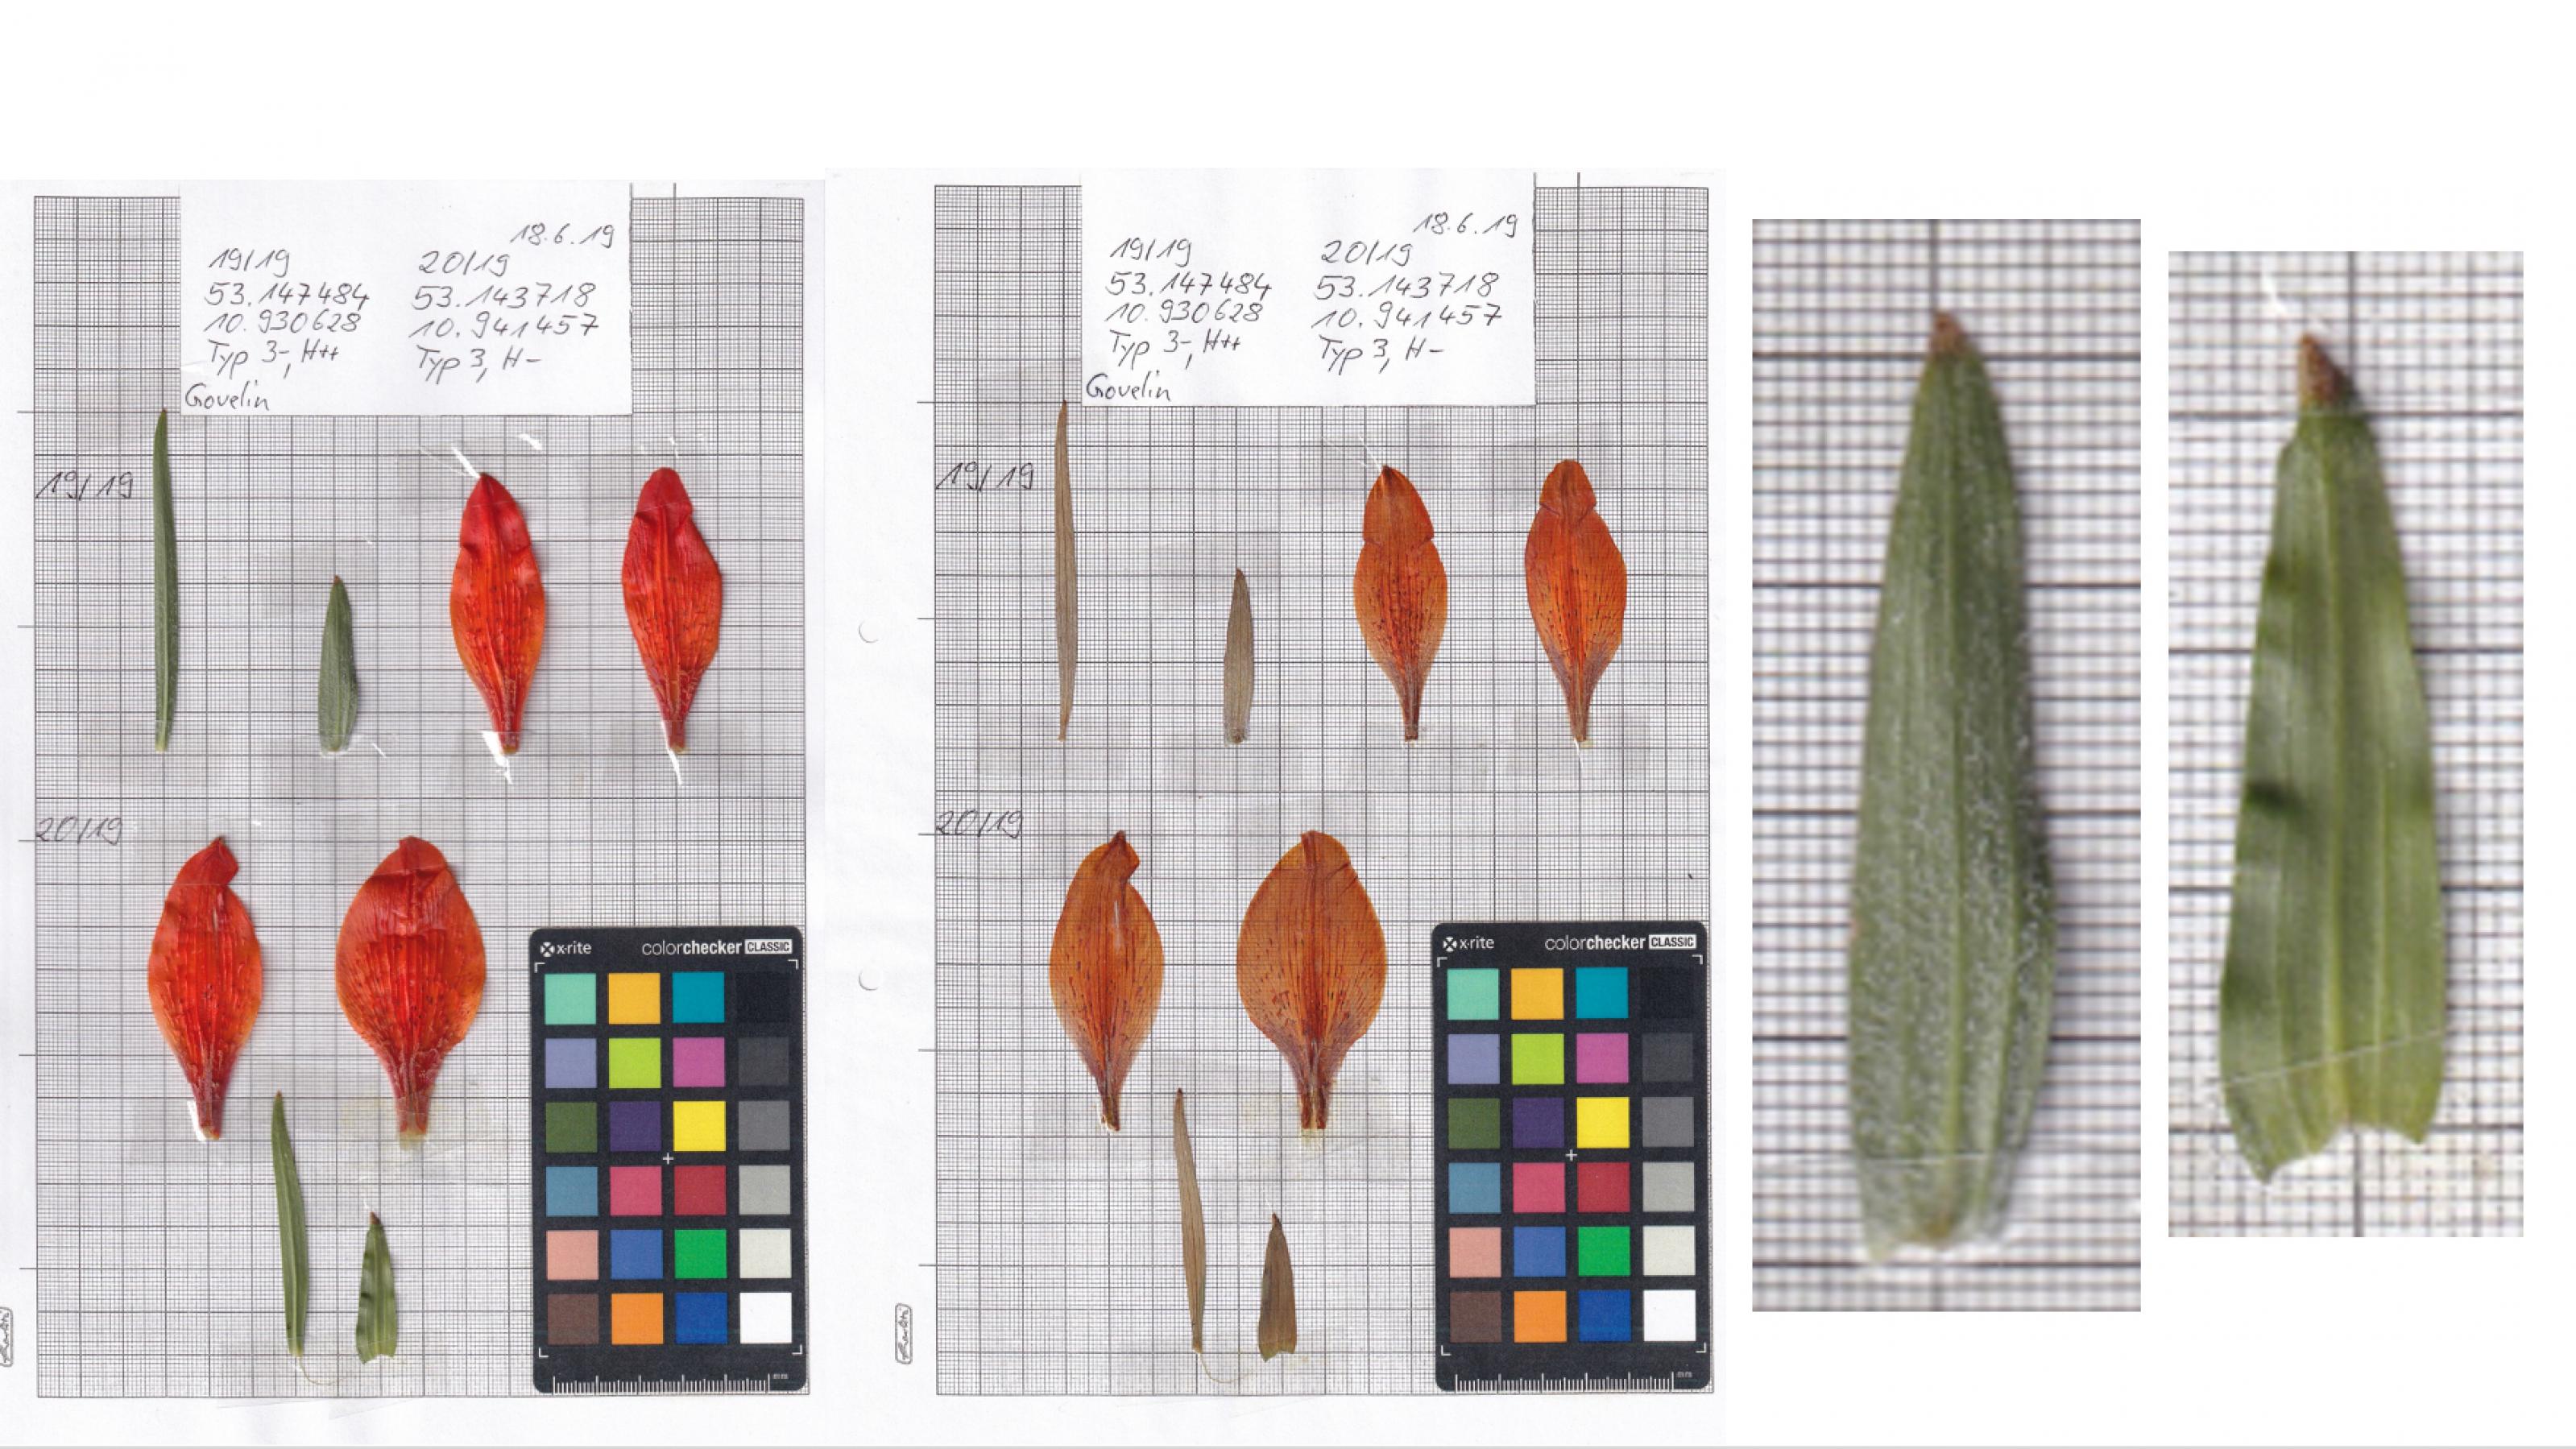 Orangefarbene Blütenblätter und schmale grüne Stängelblätter, auf Millimeterpapier aufgeklebt und mit Angaben zum Fundort beschriftet